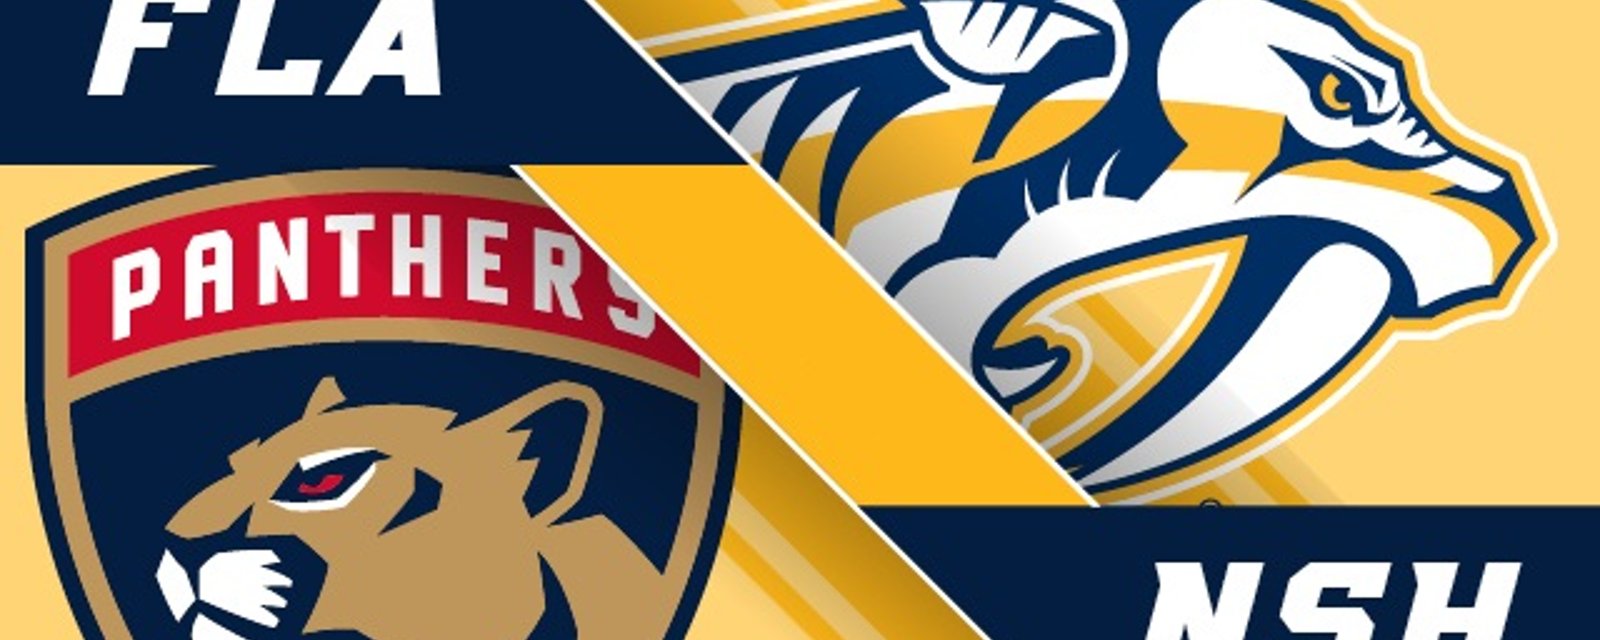 Les Panthers et les Predators modifient leur logo